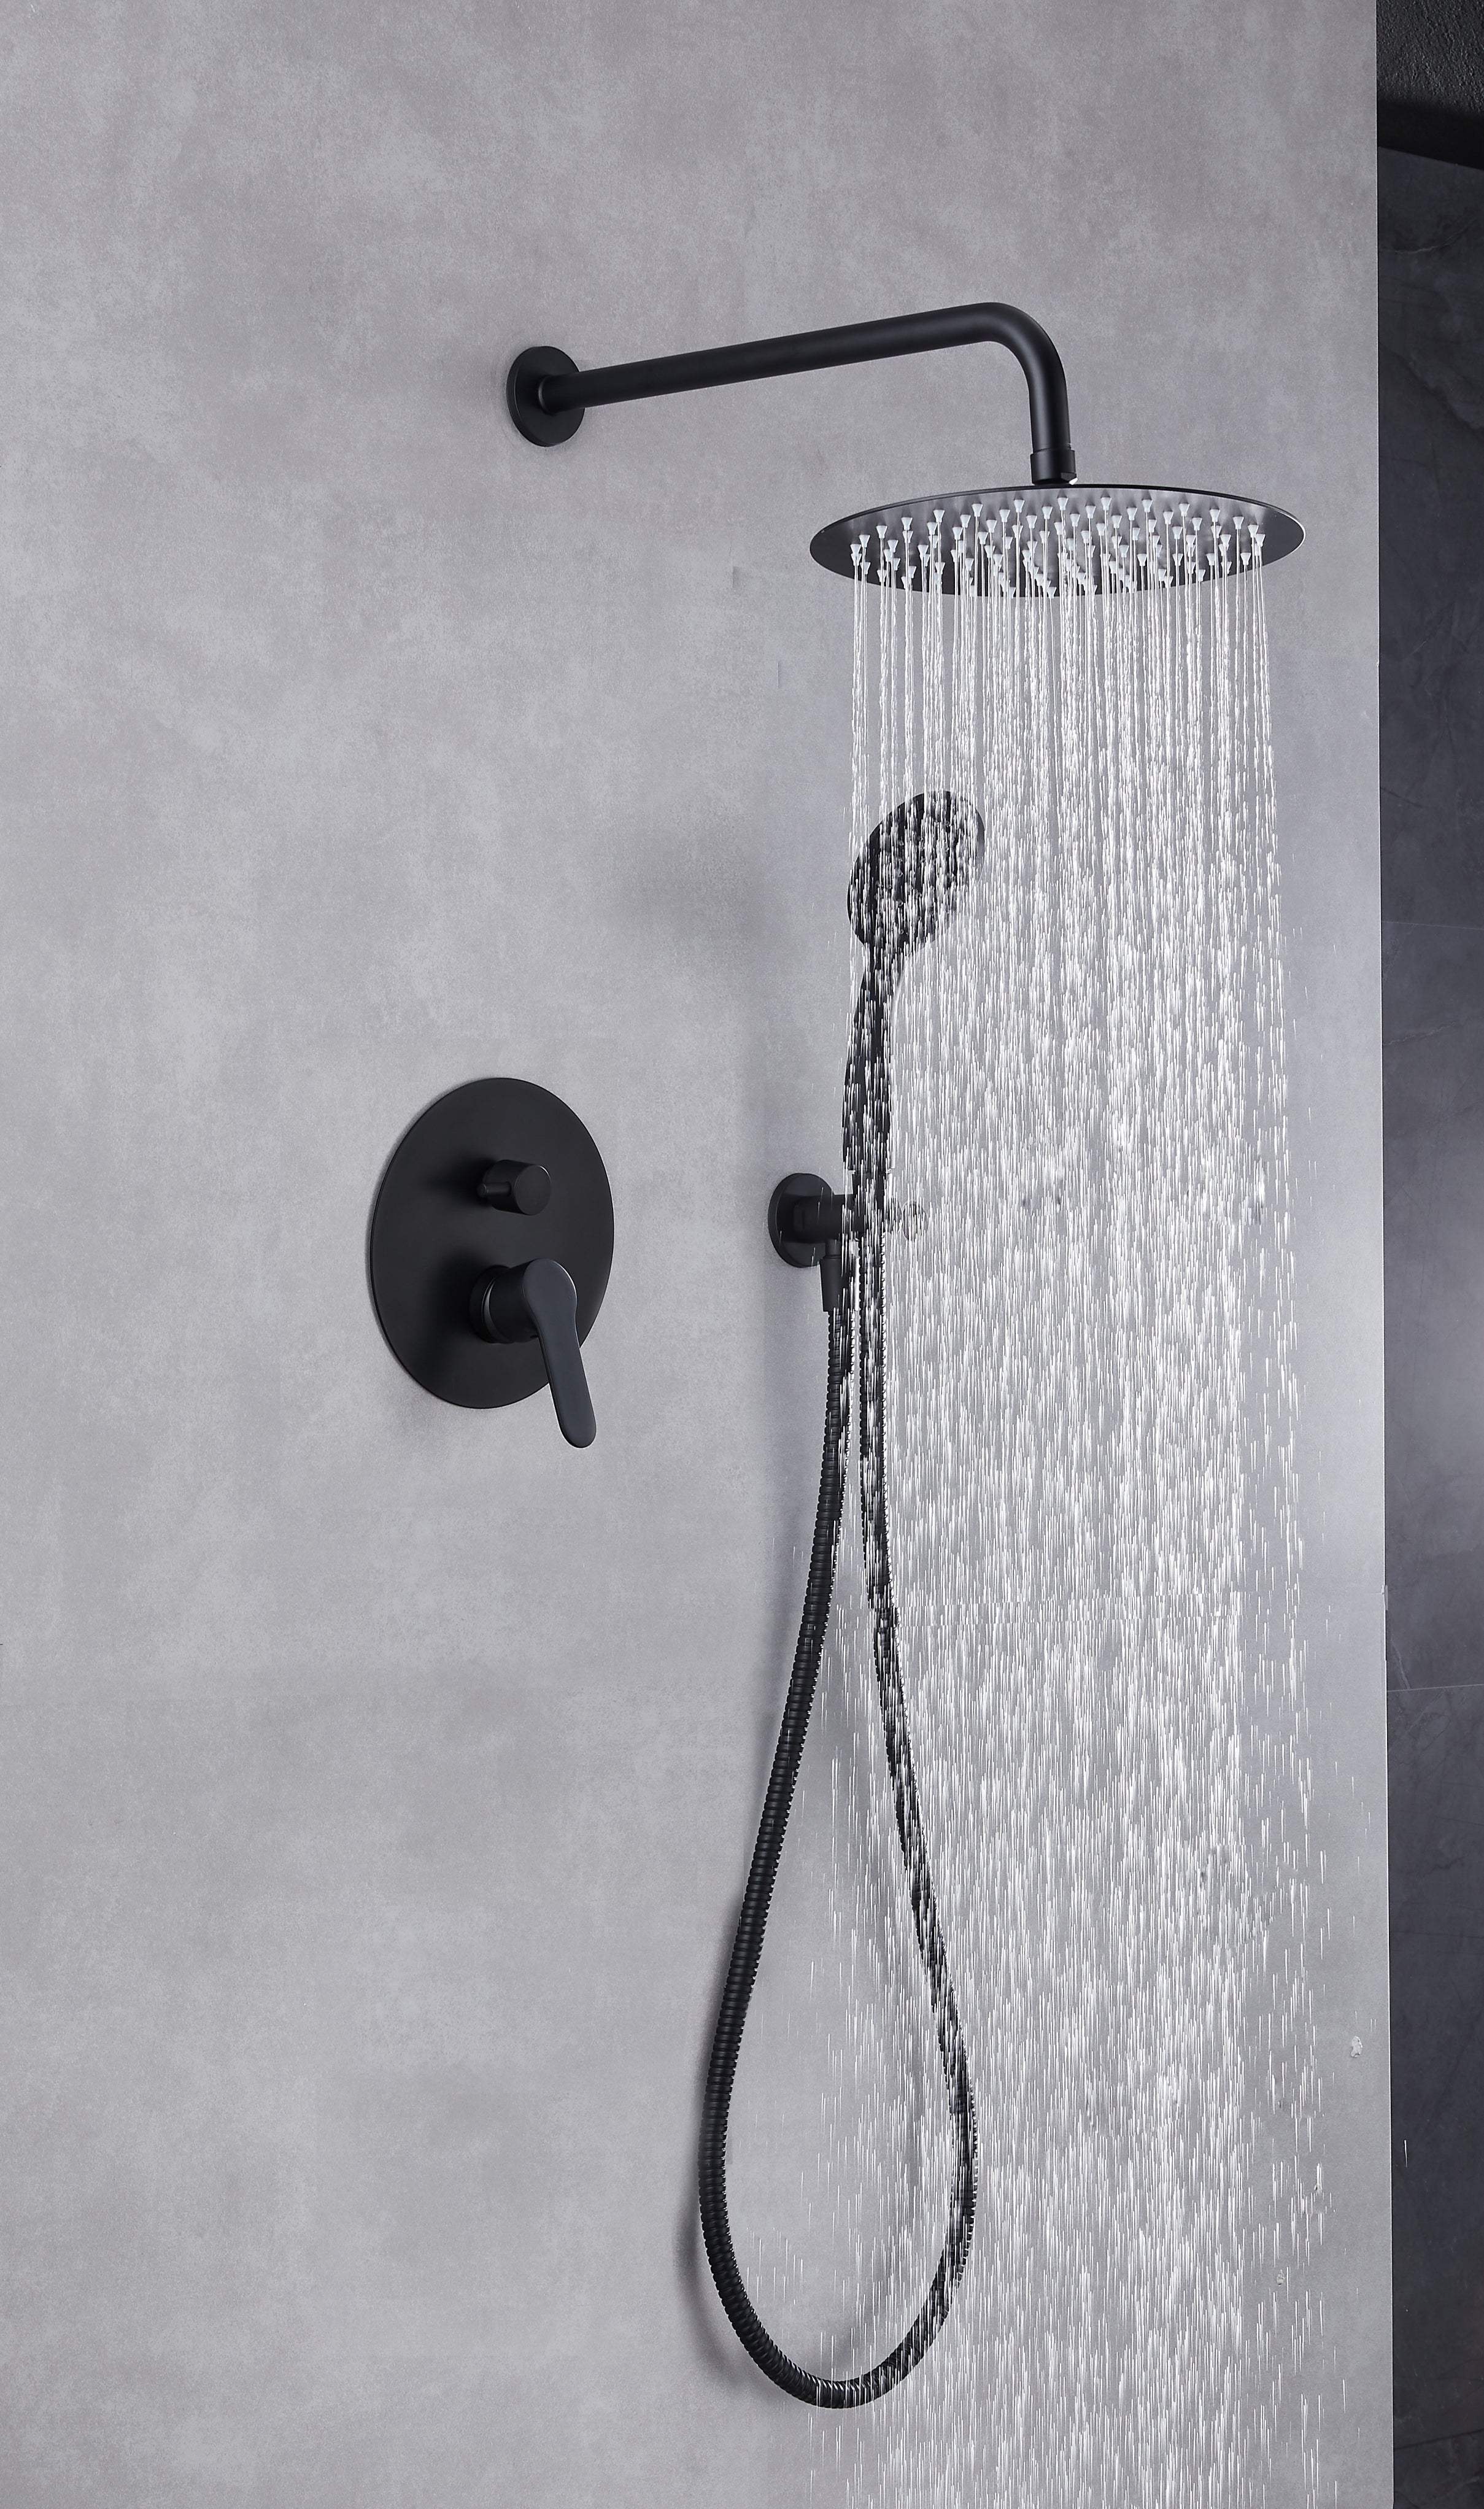 Cómo instalar un conjunto de ducha I LEROY MERLIN 